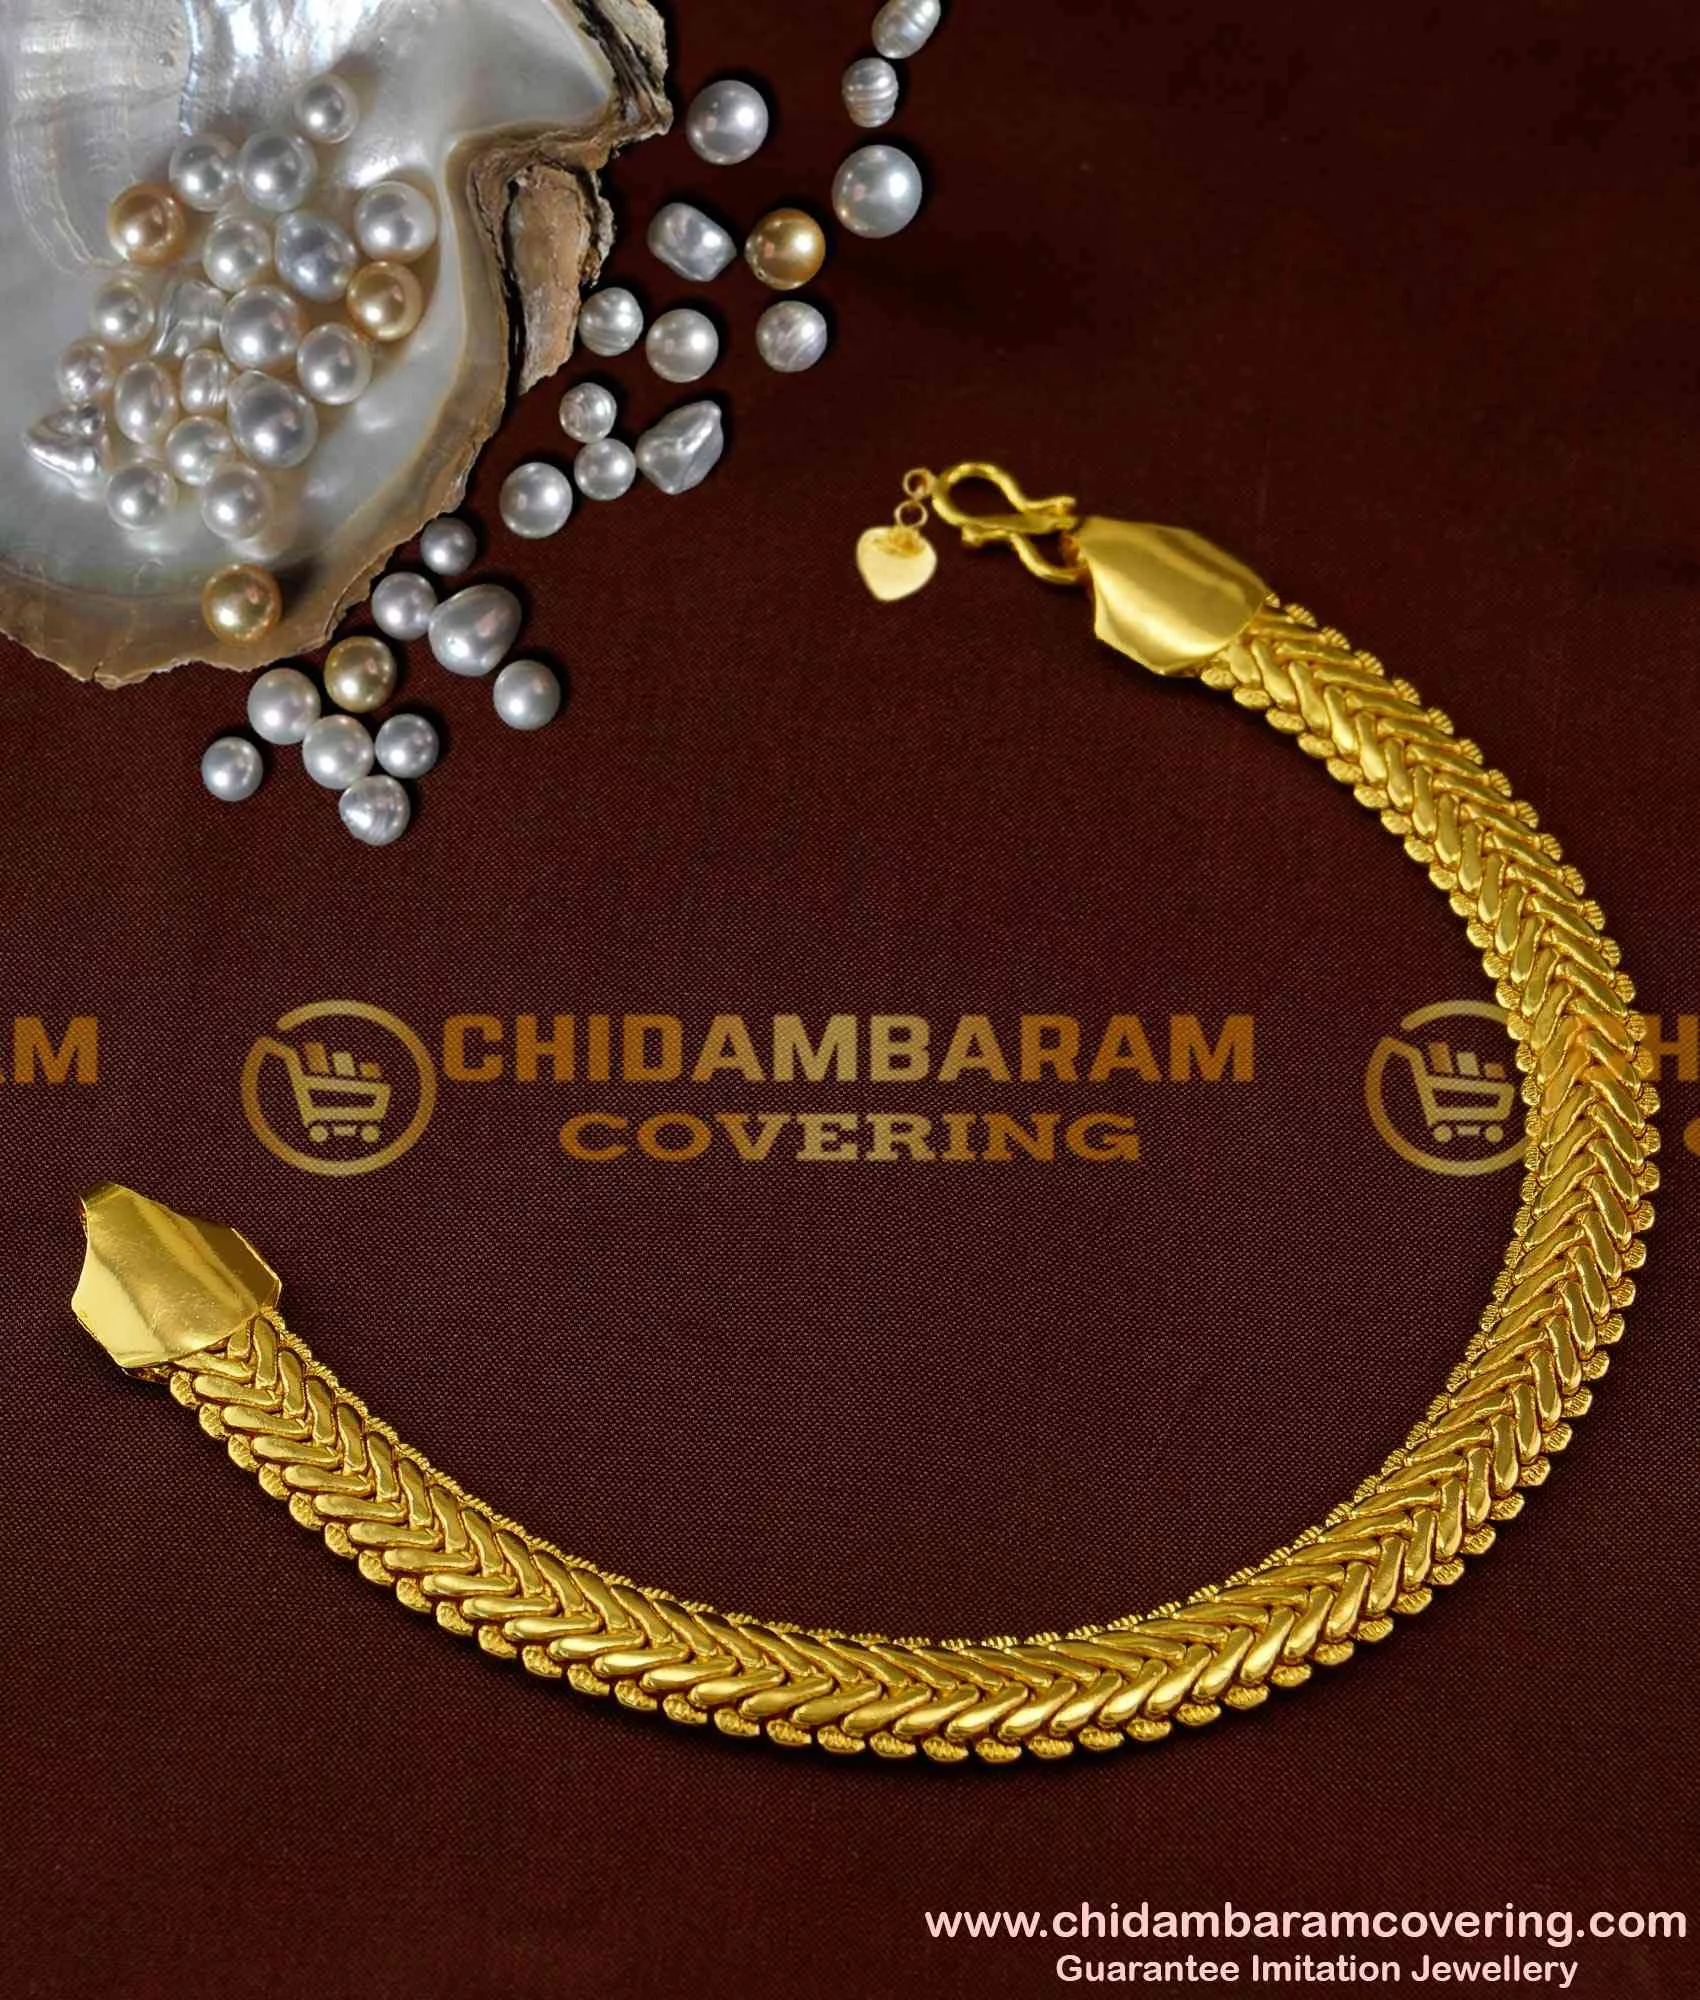 1 Gram Gold Forming 3 Line Star Nawabi Sophisticated Design Bracelet -  Style C010 ₹.… | Instagram